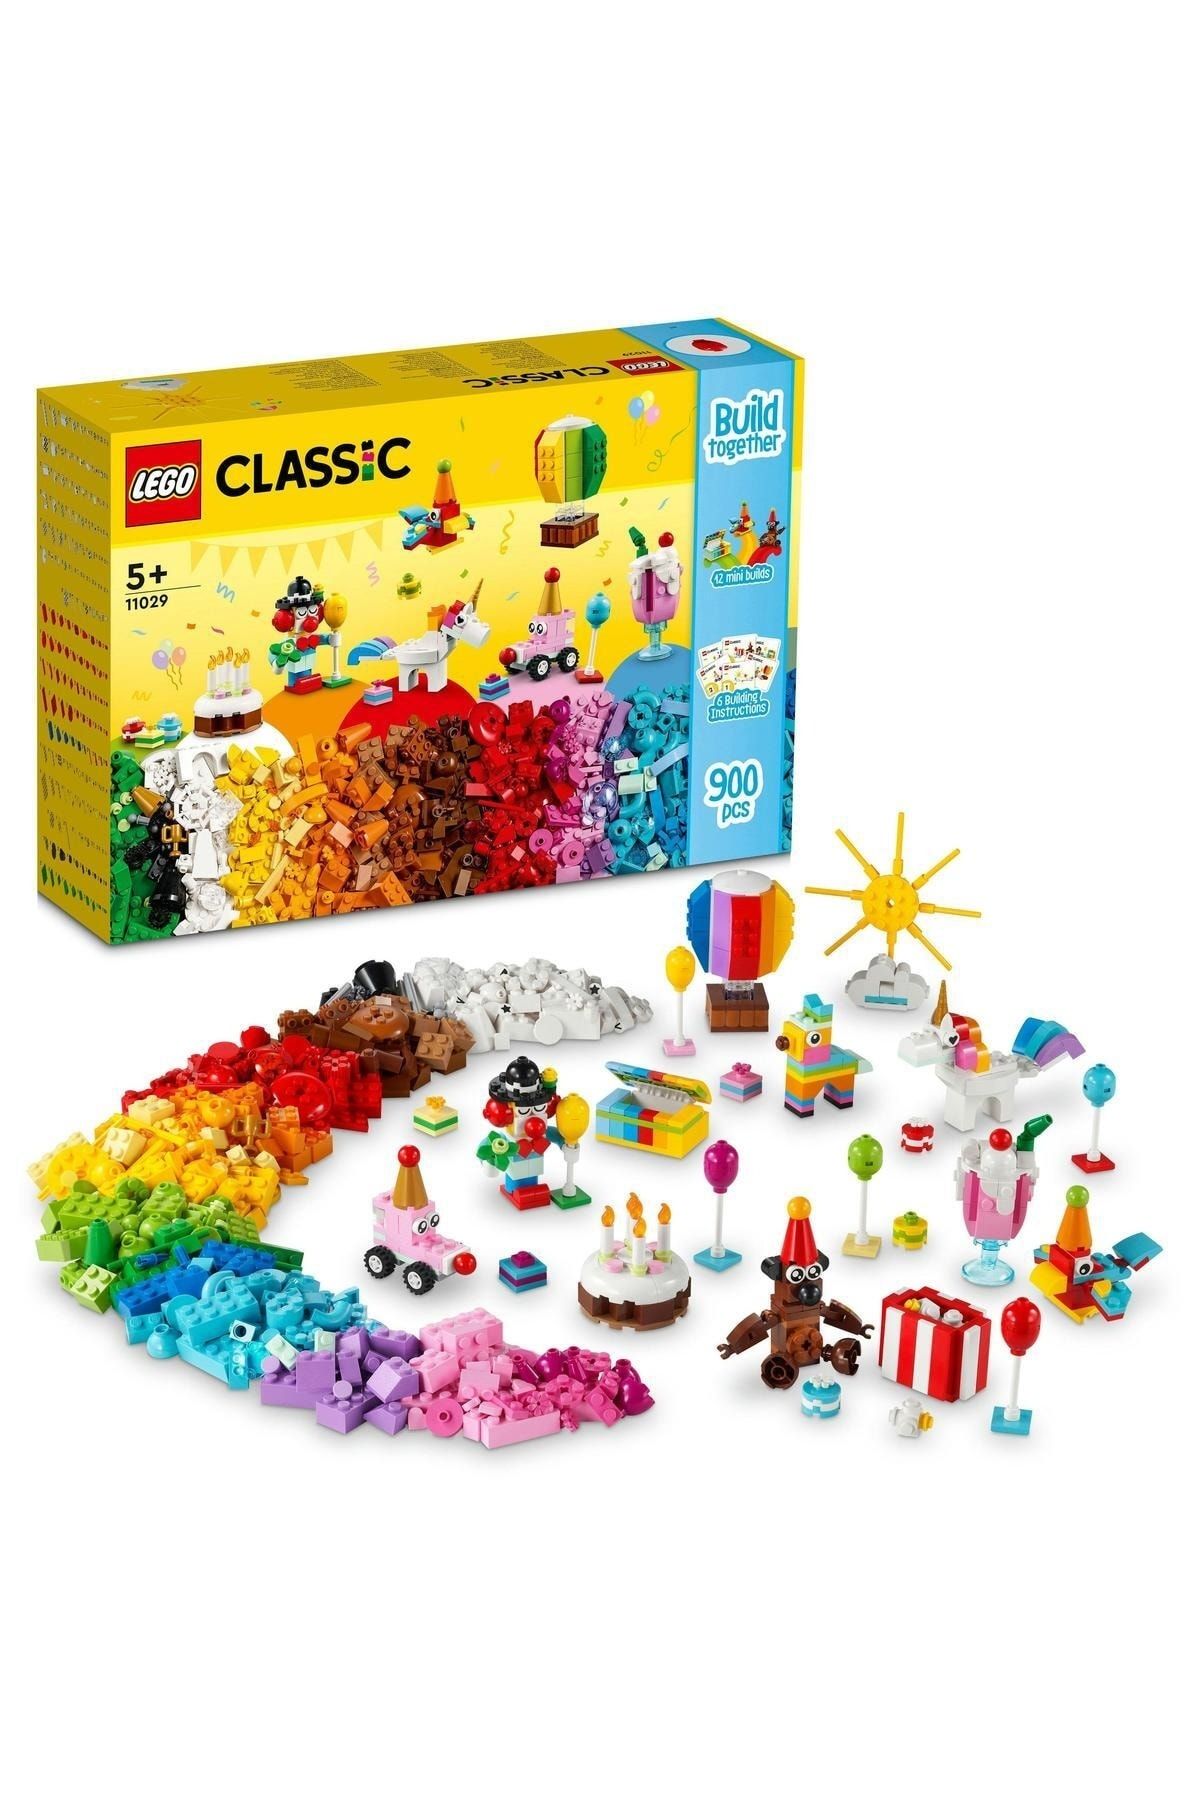 LEGO ® Classic Yaratıcı Parti Kutusu 11029 - 5 Yaş ve Üzeri Çocuklar için Yapım Seti (900 Parça)